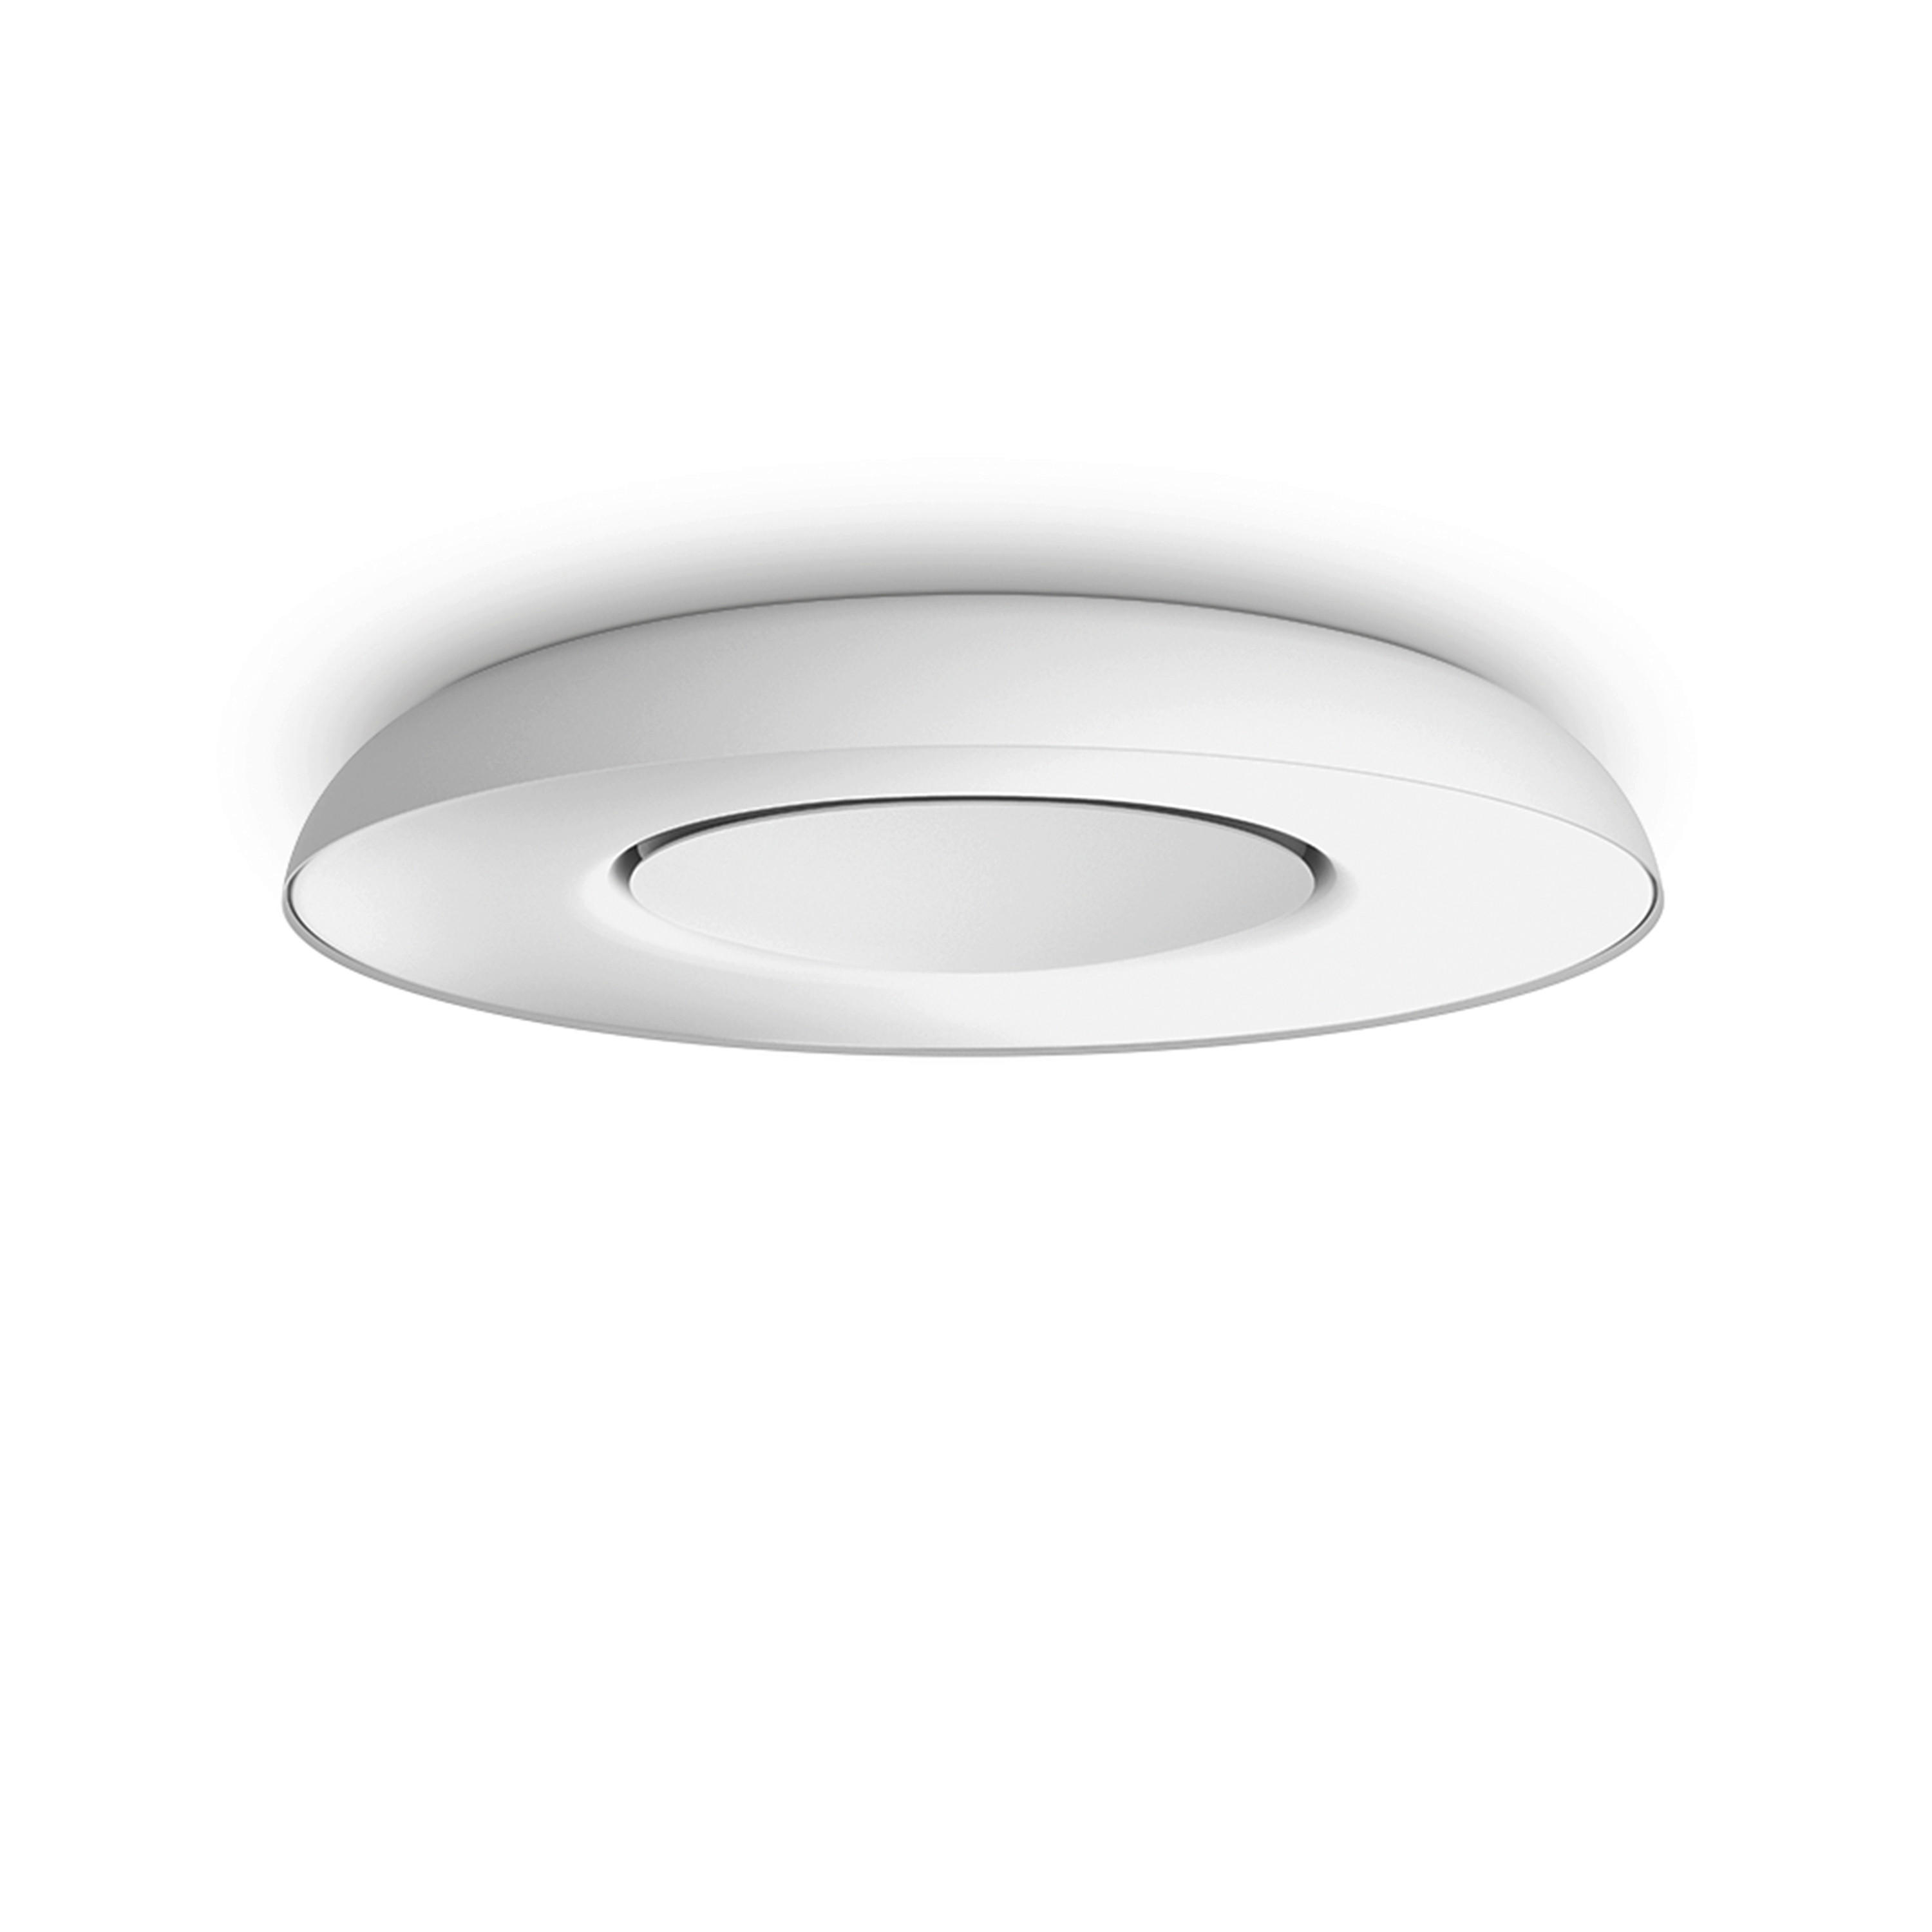 LED-DECKENLEUCHTE 39,1/7,1 cm    - Weiß, Design, Metall (39,1/7,1cm) - Philips HUE